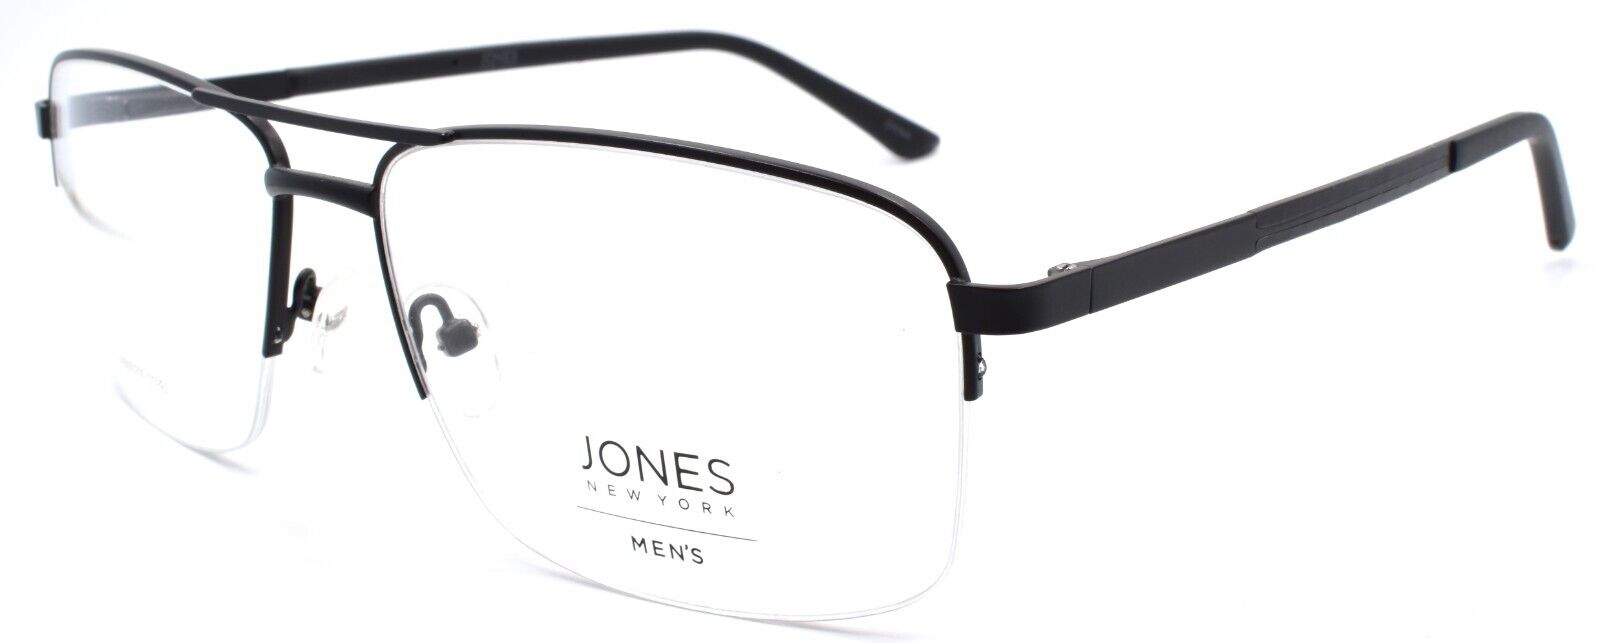 1-Jones New York JNY J361 Men's Eyeglasses Frames Half-rim 60-17-145 Black-751286331134-IKSpecs